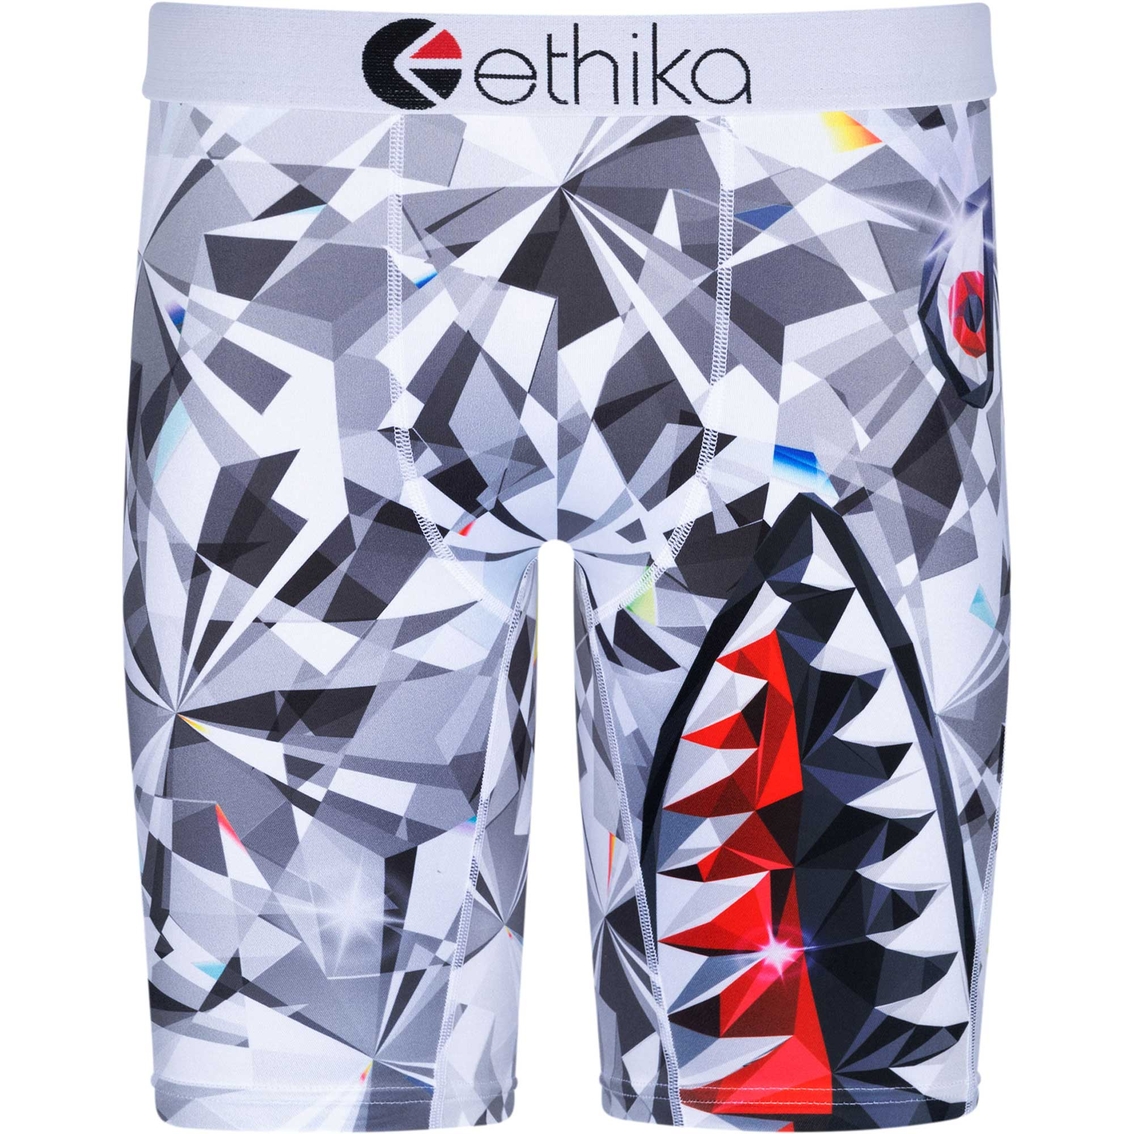 ethika Swimwear for Men